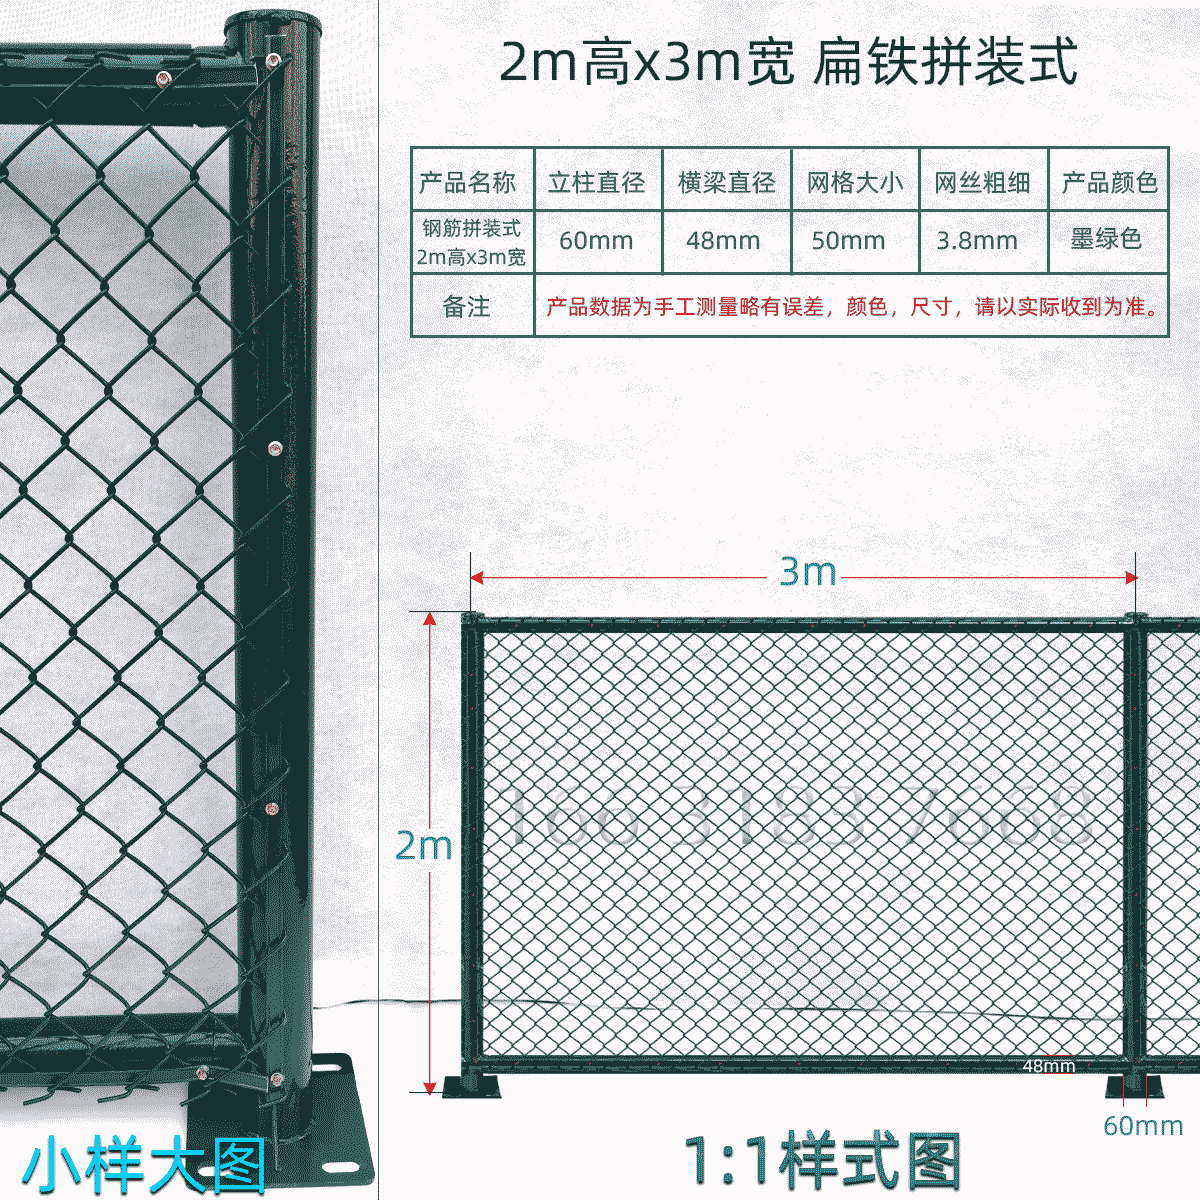 2m高x3m宽扁铁组装式球场围栏网